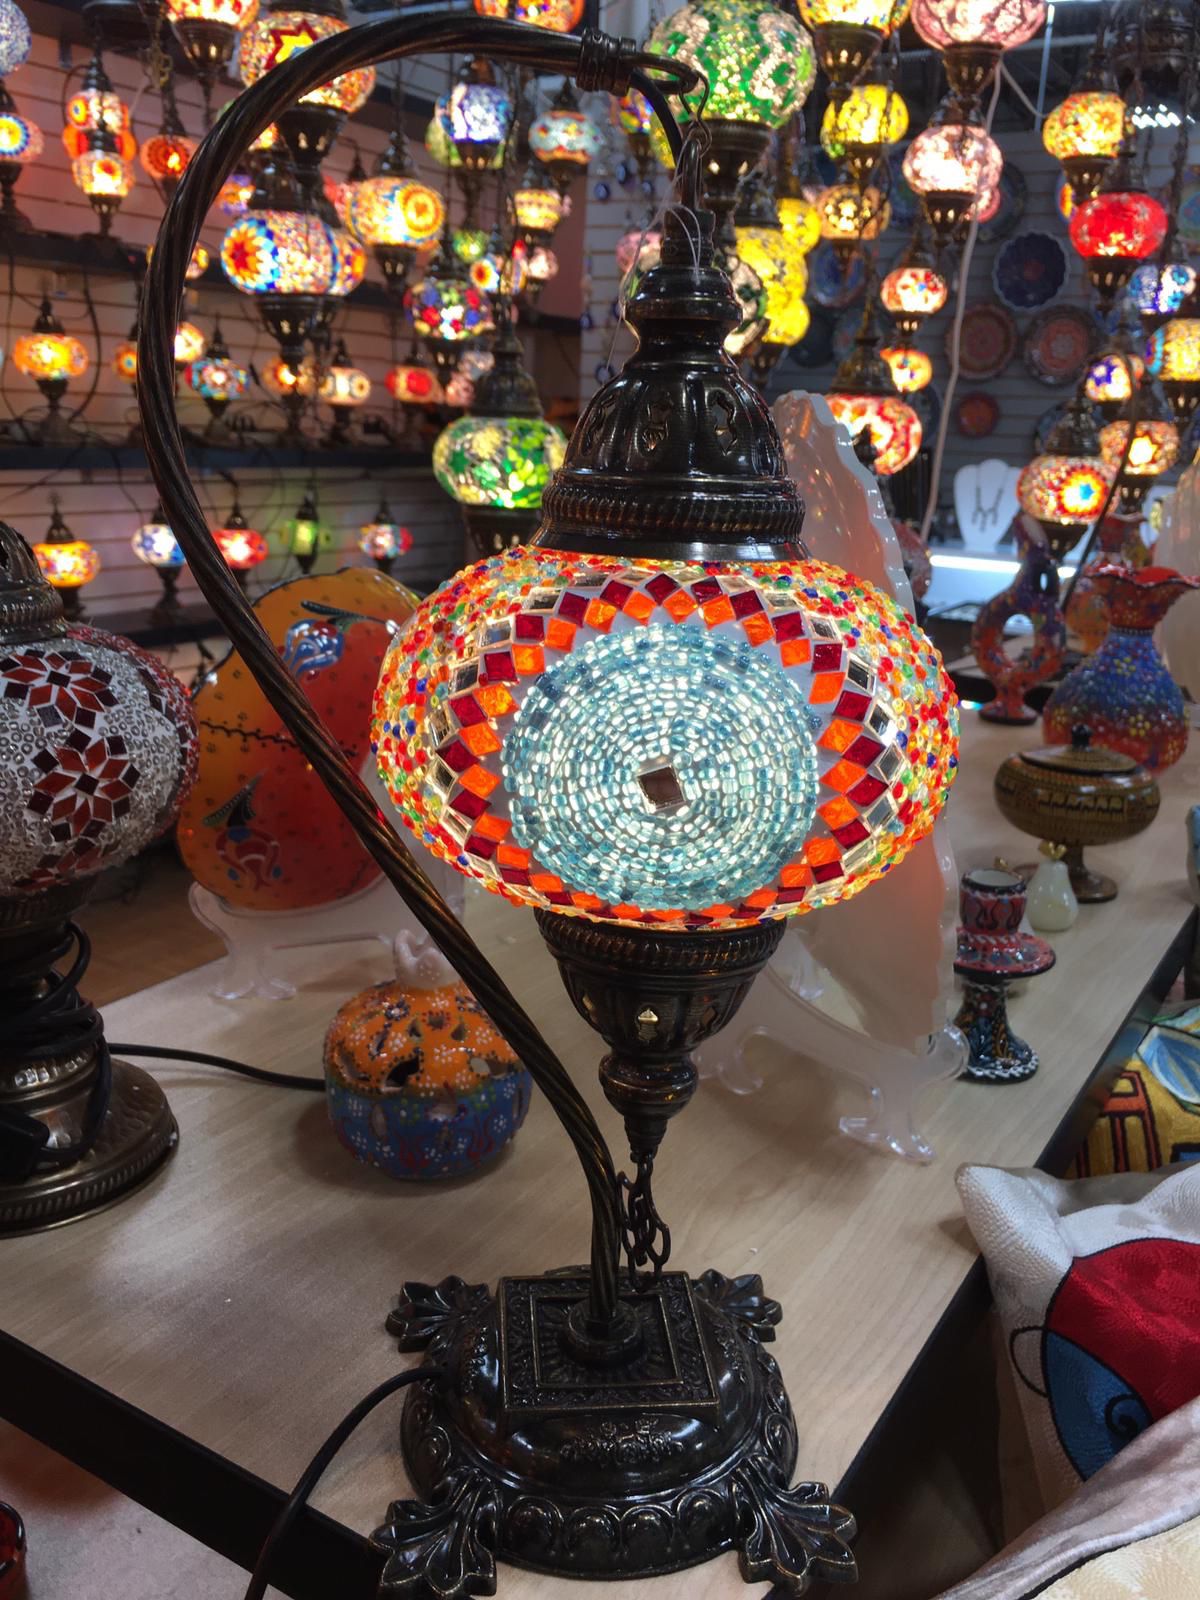 Handmade Turkish lamps